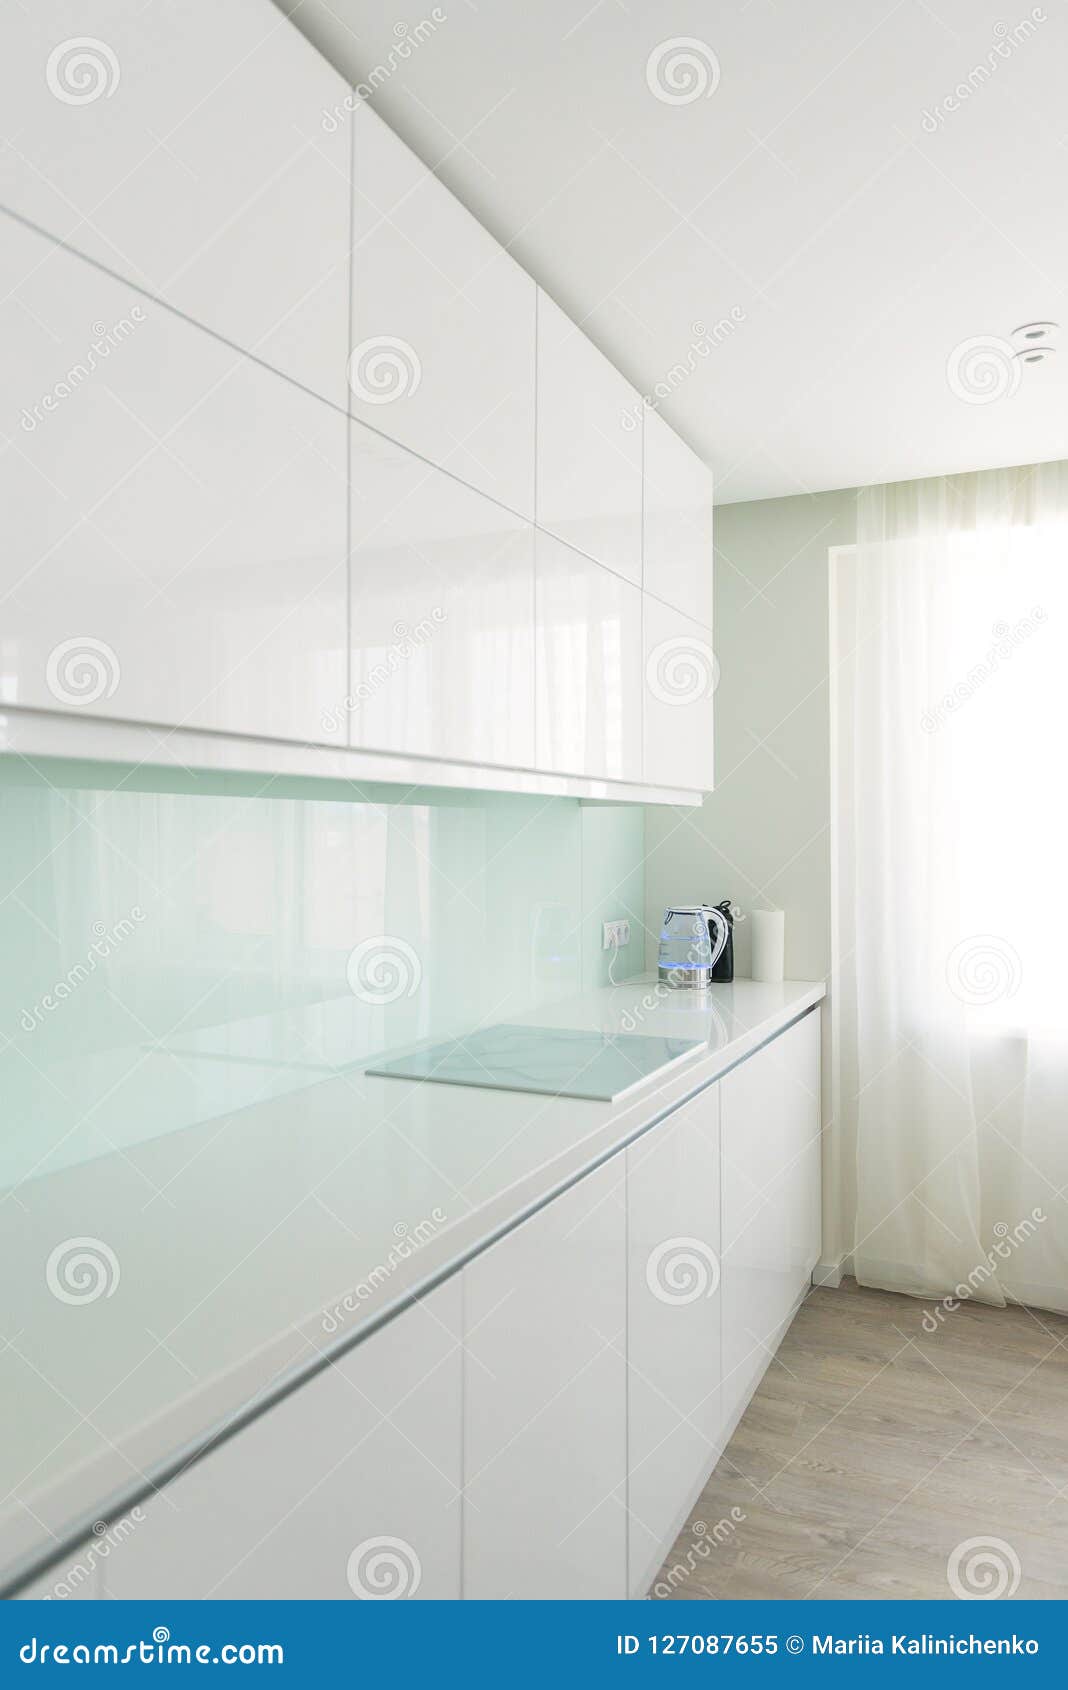 White Kitchen In Minimalist Style Interior Design Theme